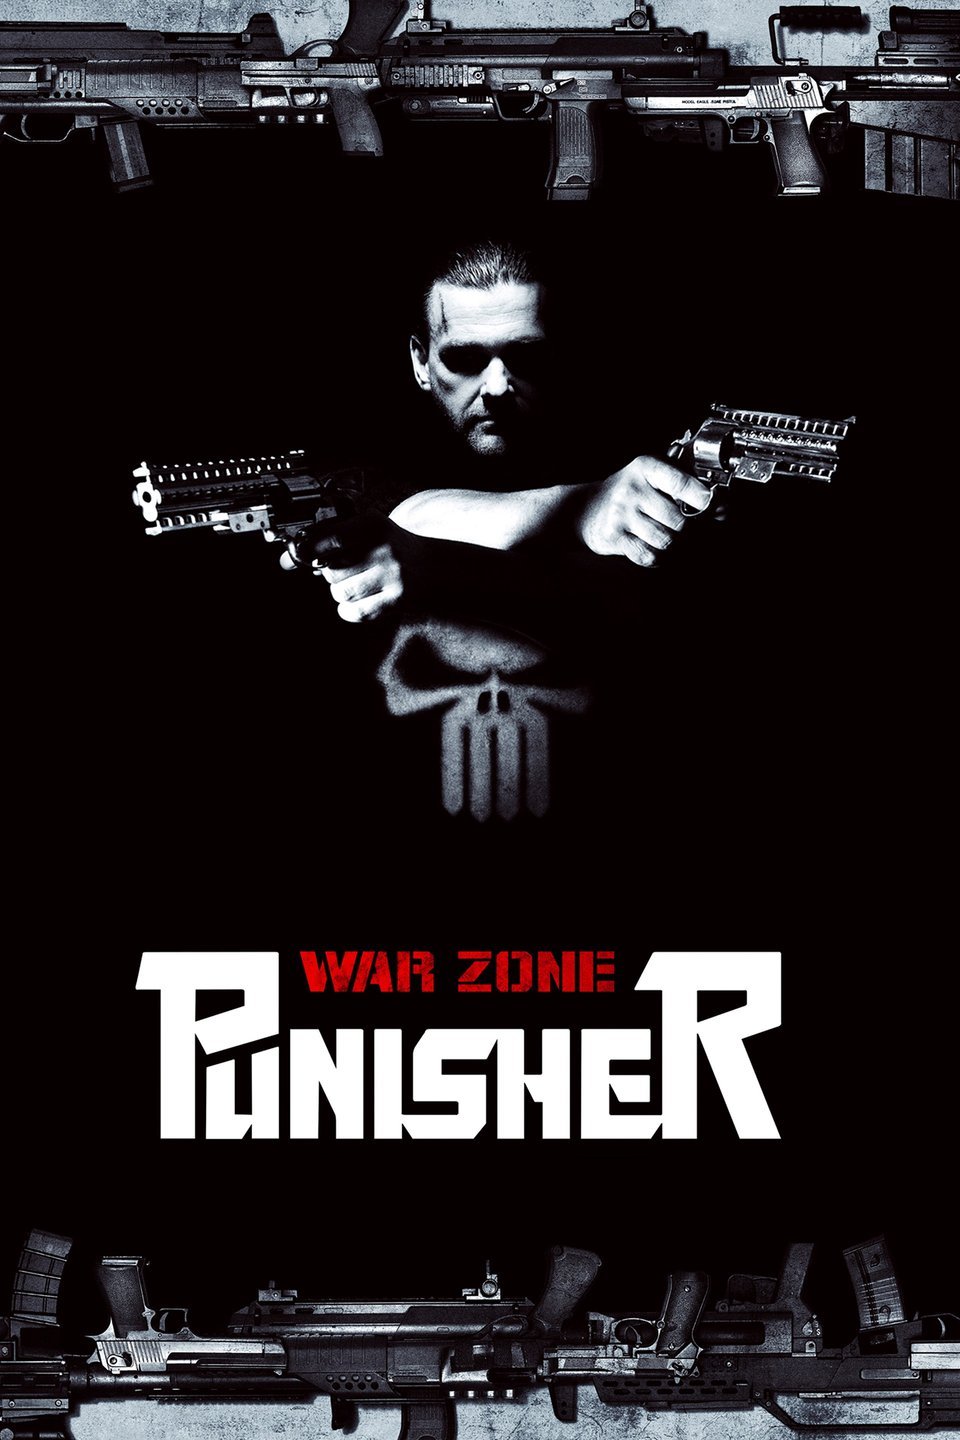 [MINI-HD] Punisher: War Zone (2008) เพชฌฆาตมหากาฬ ภาค 2 [1080p] [พากษ์ไทย 5.1 + เสียงอังกฤษ DTS] [บรรยายไทย + อังกฤษ] [เสียงไทย + ซับไทย] [OPENLOAD]